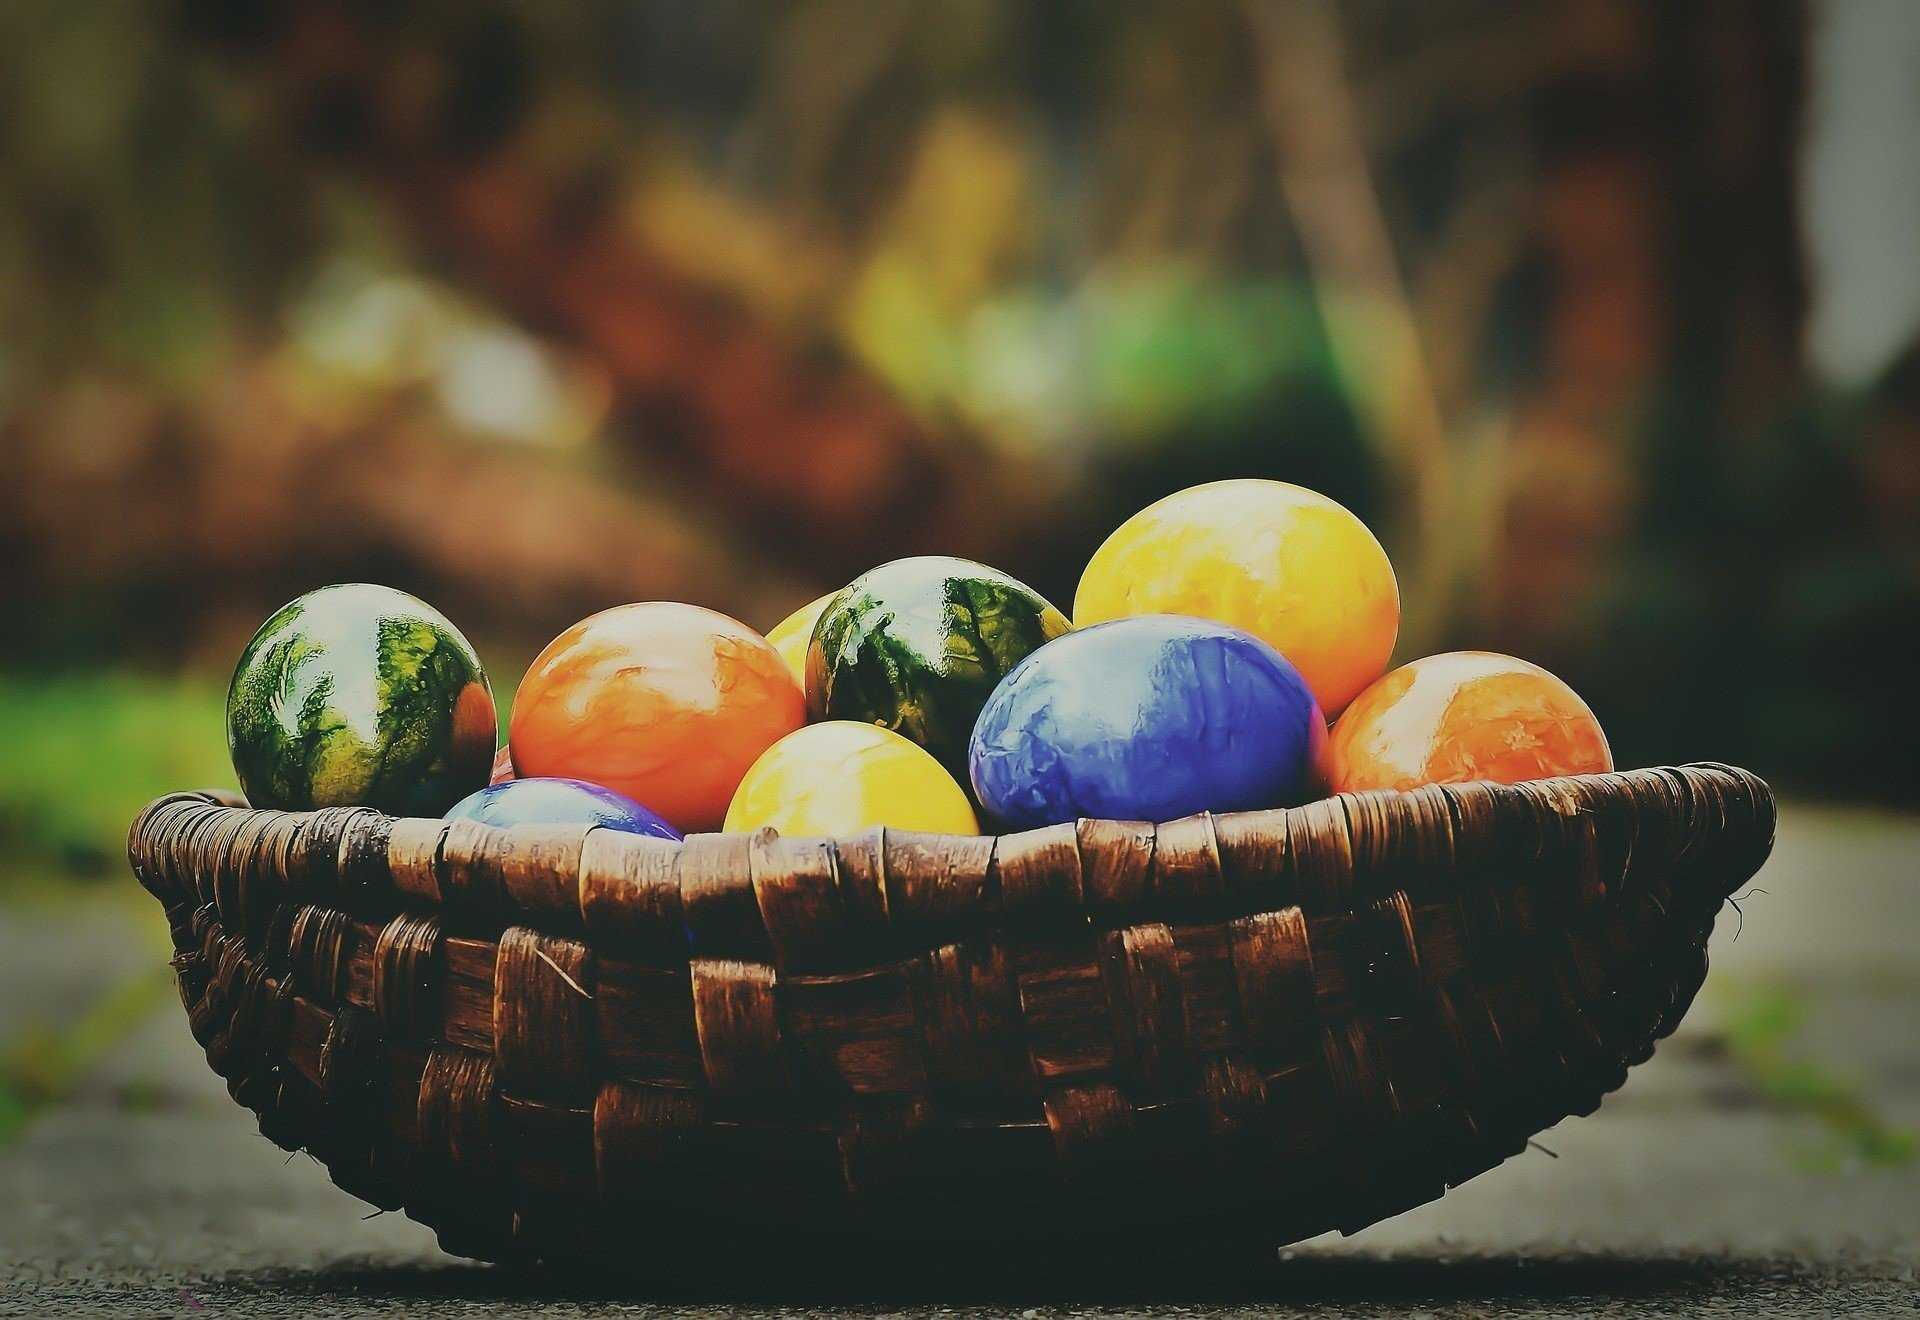 Kiedy obchodzimy Wielkanoc? W tym roku Episkopat wydał nowe zalecenie w sprawie obchodów